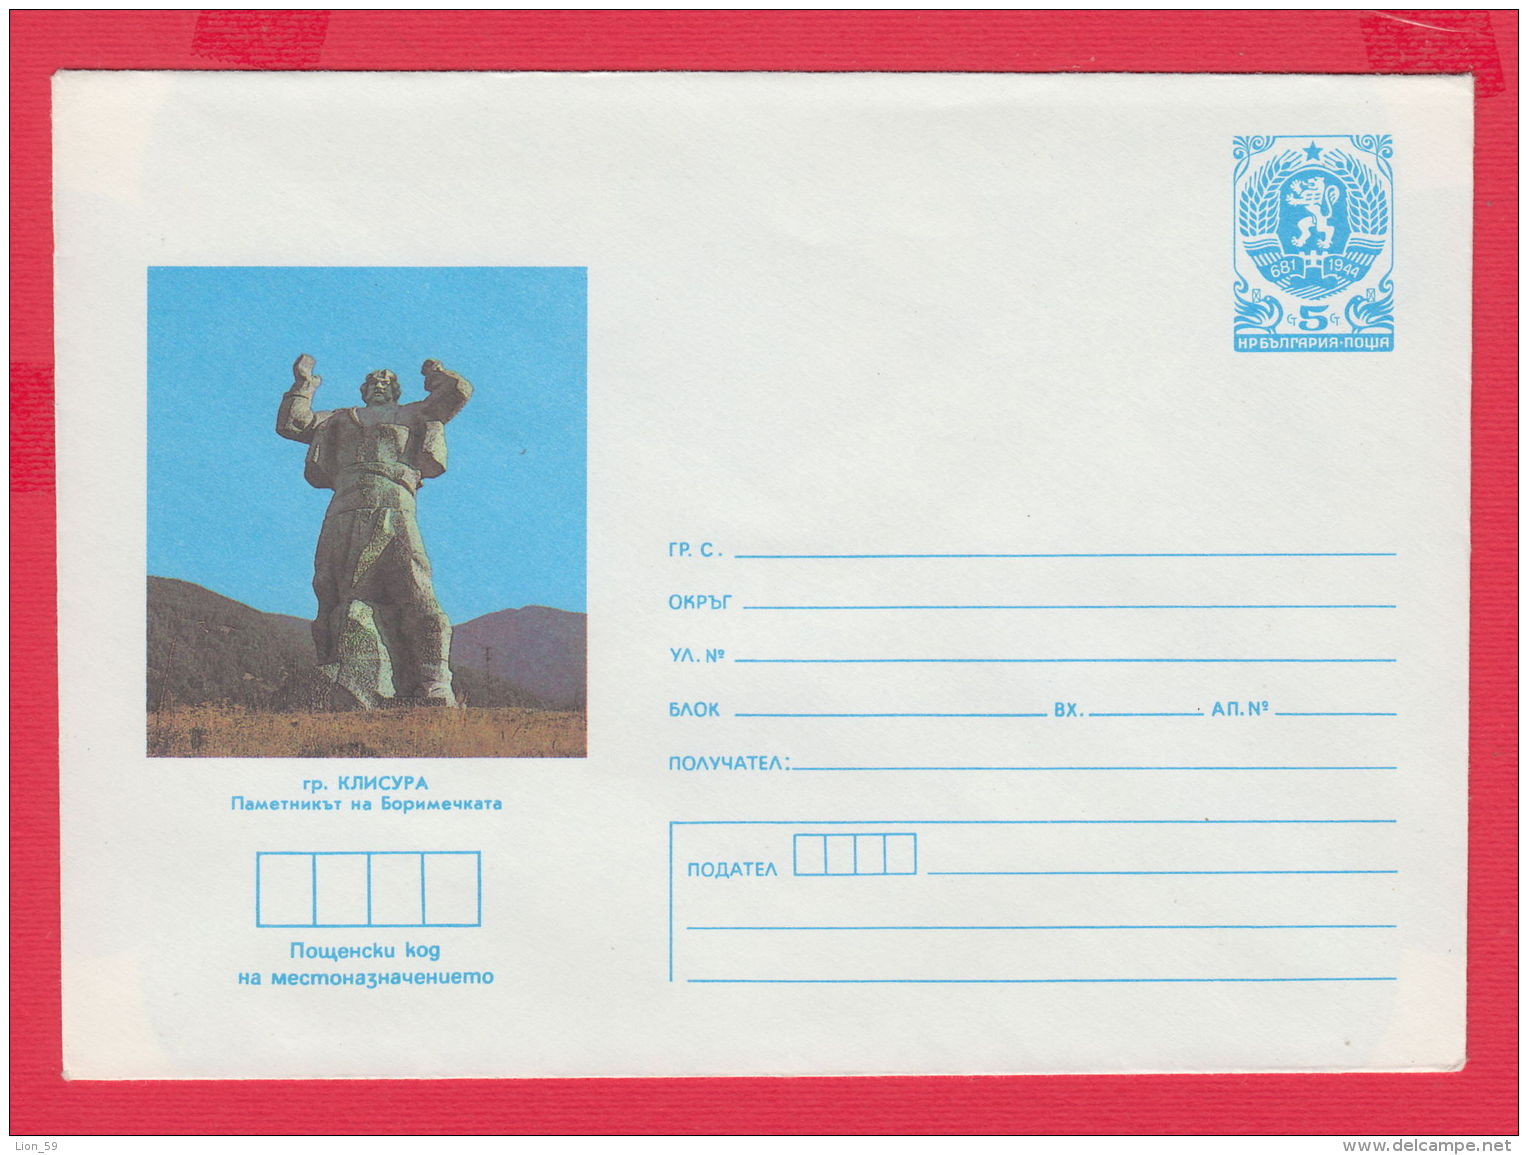 228635 / MINT 1986 - 5 St. ( 8 St. Lion ) Klisura The Monument To Borimechkata , Bulgaria Stationery - Enveloppes